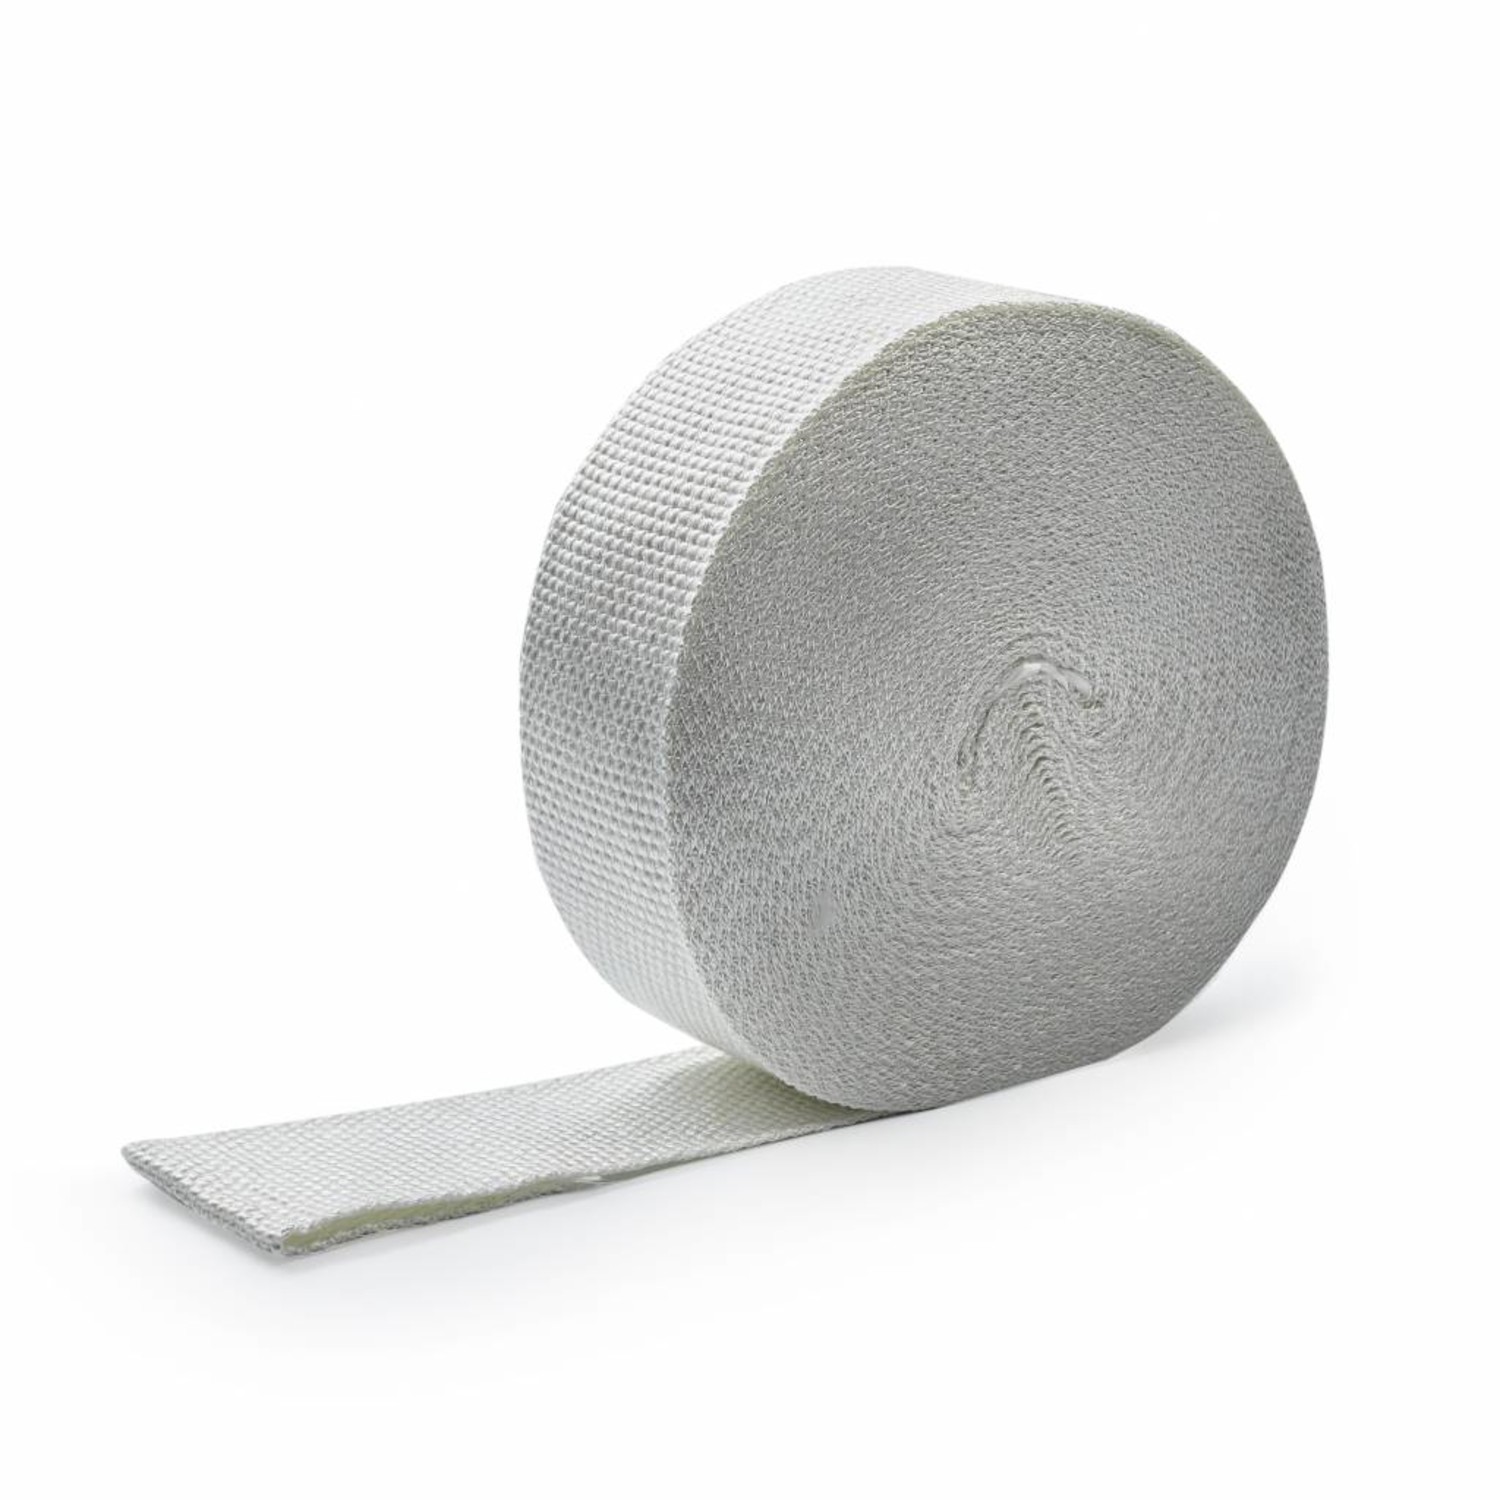 Thermoband Weiss preisgünstig und sofort verfügbar! - Heat Shieldings